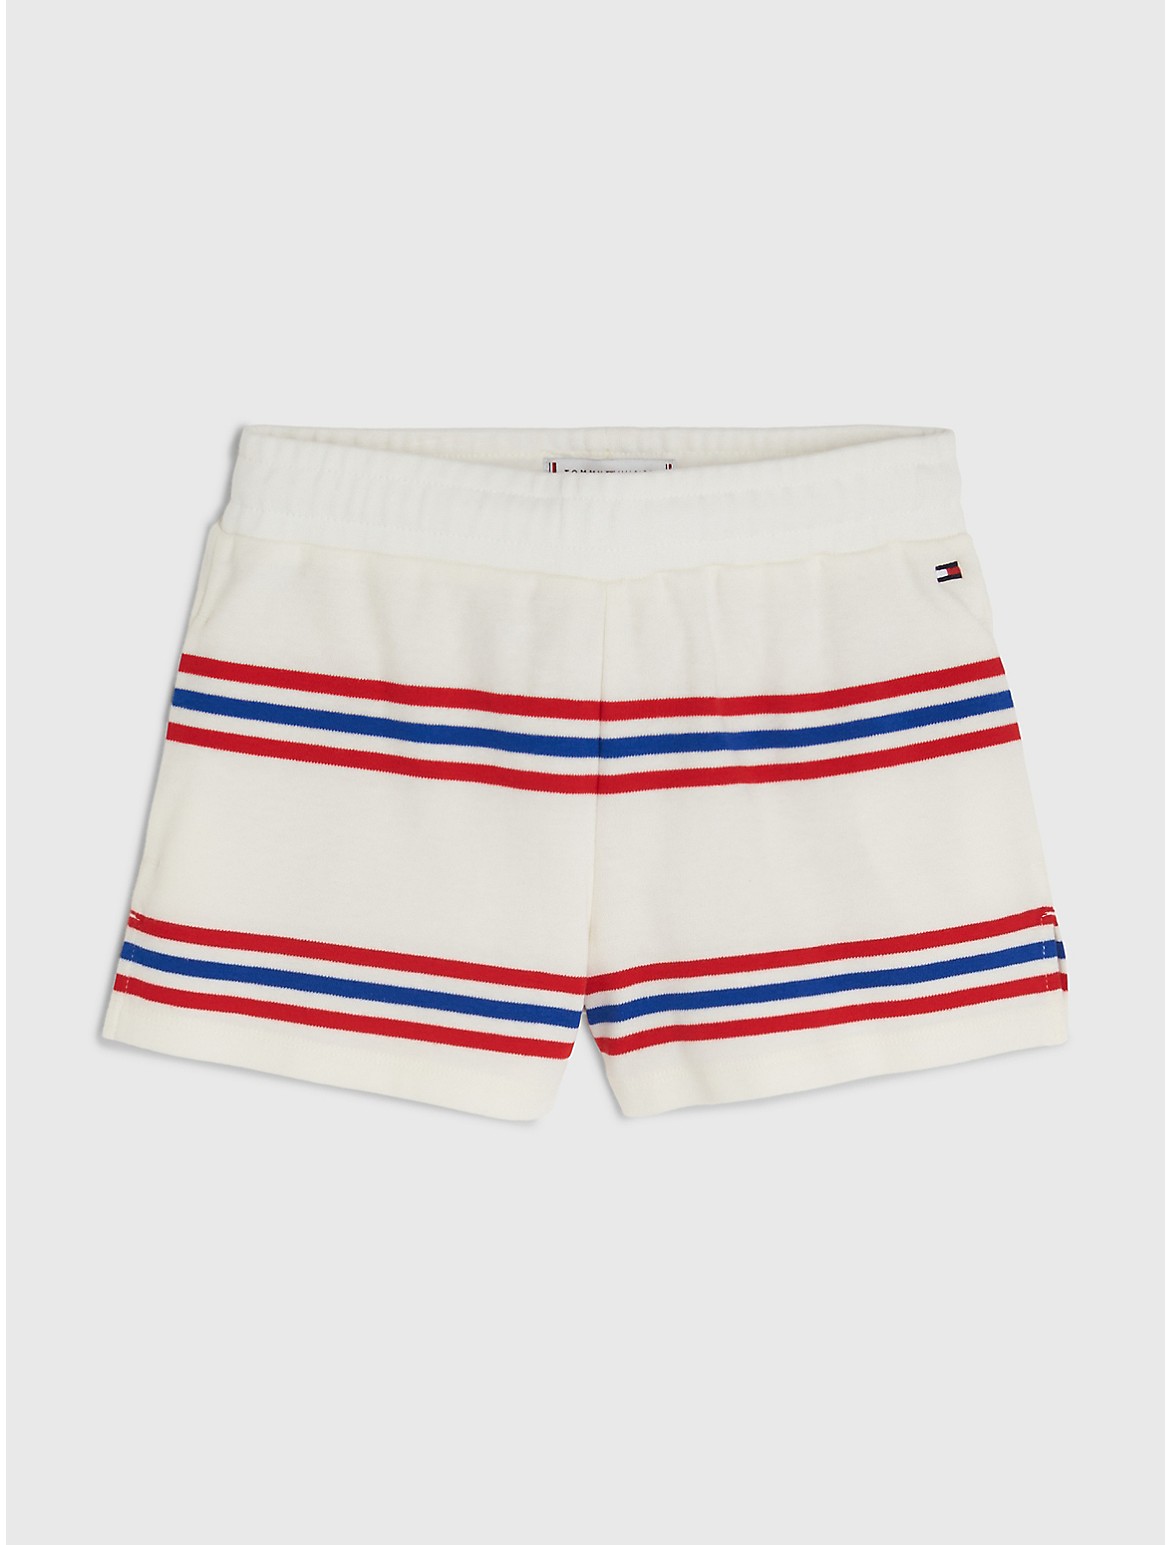 Tommy Hilfiger Girls' Kids' Varsity Stripe Short - White - 5